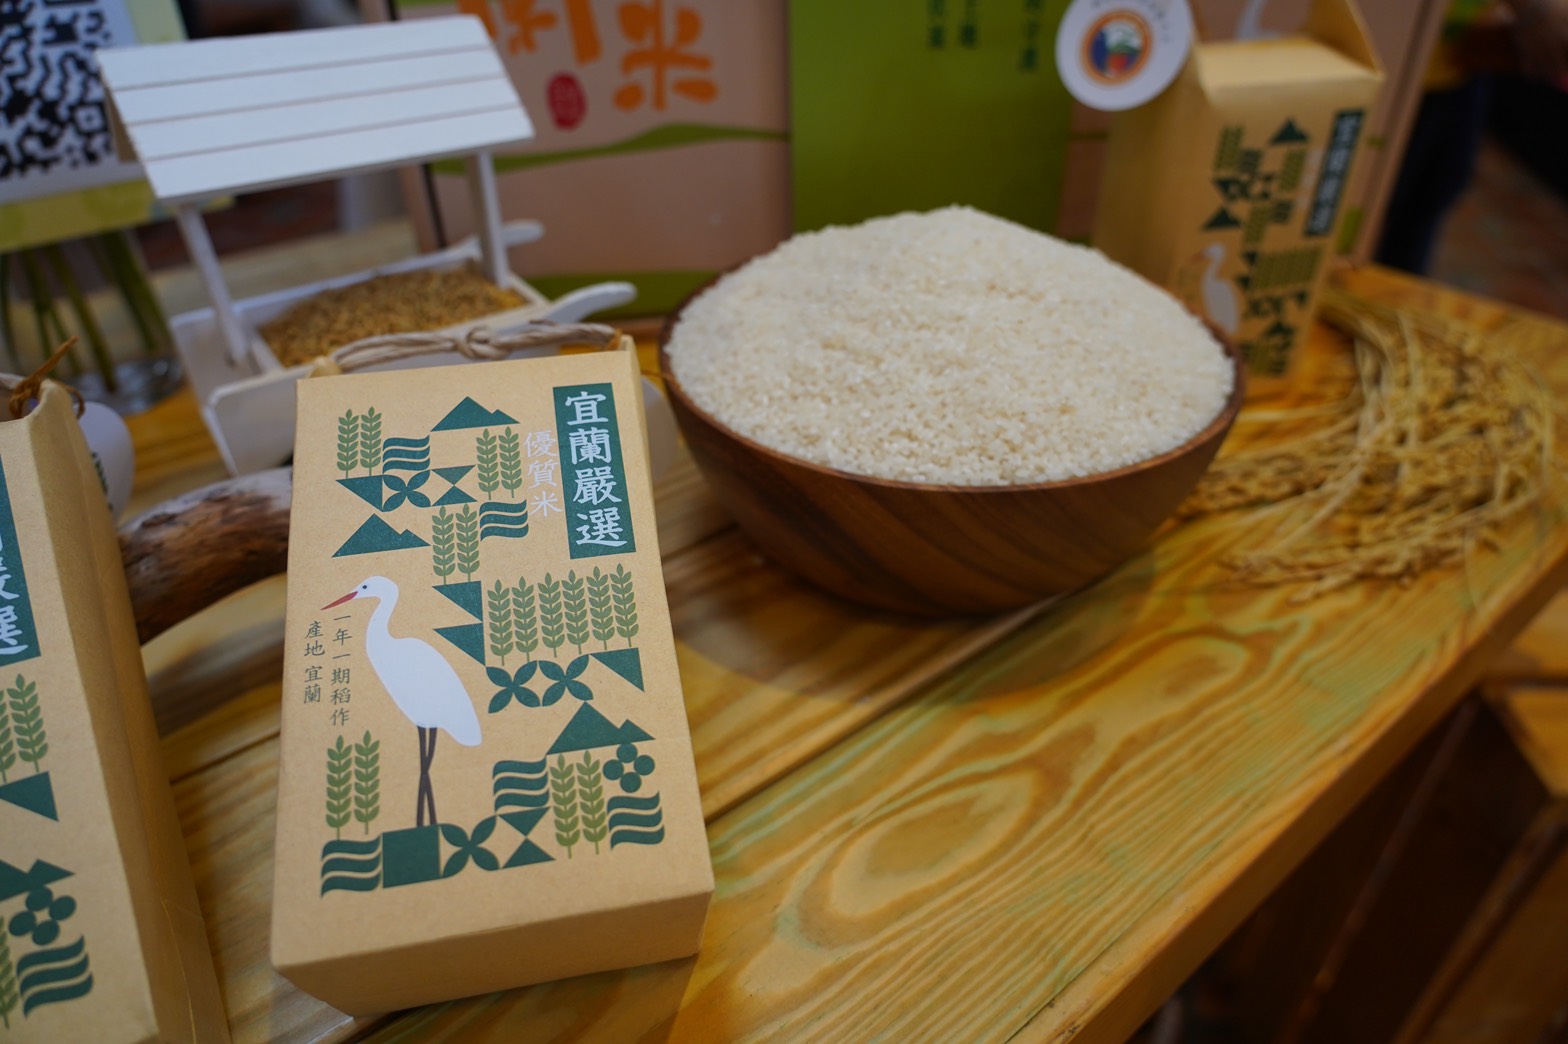 台北花博農民市集特別邀請宜蘭縣農會及其轄區內的農民至市集推廣促銷紅文旦及在地嚴選米